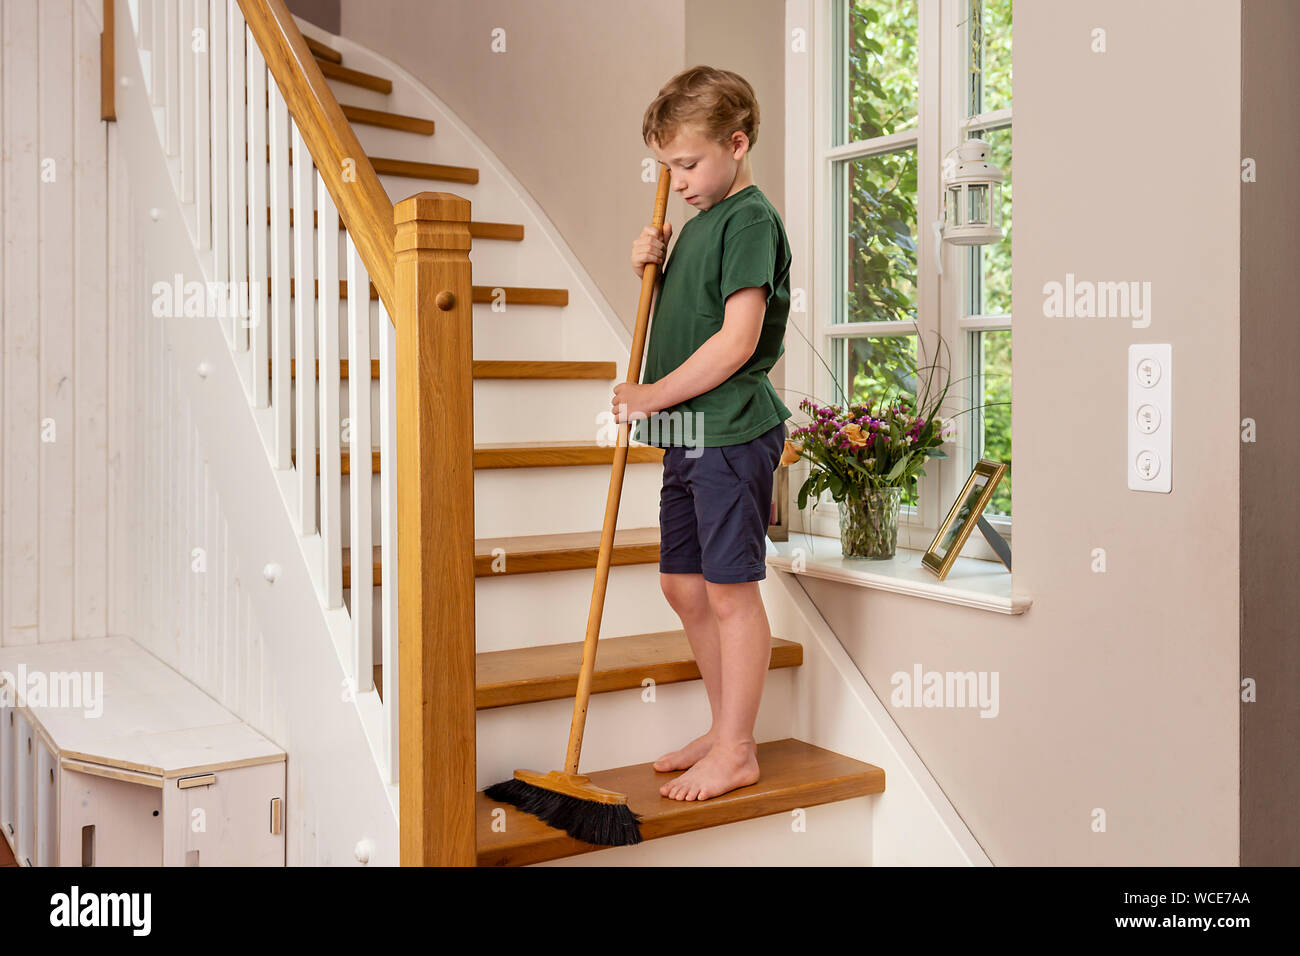 Sweeping stairs immagini e fotografie stock ad alta risoluzione - Alamy